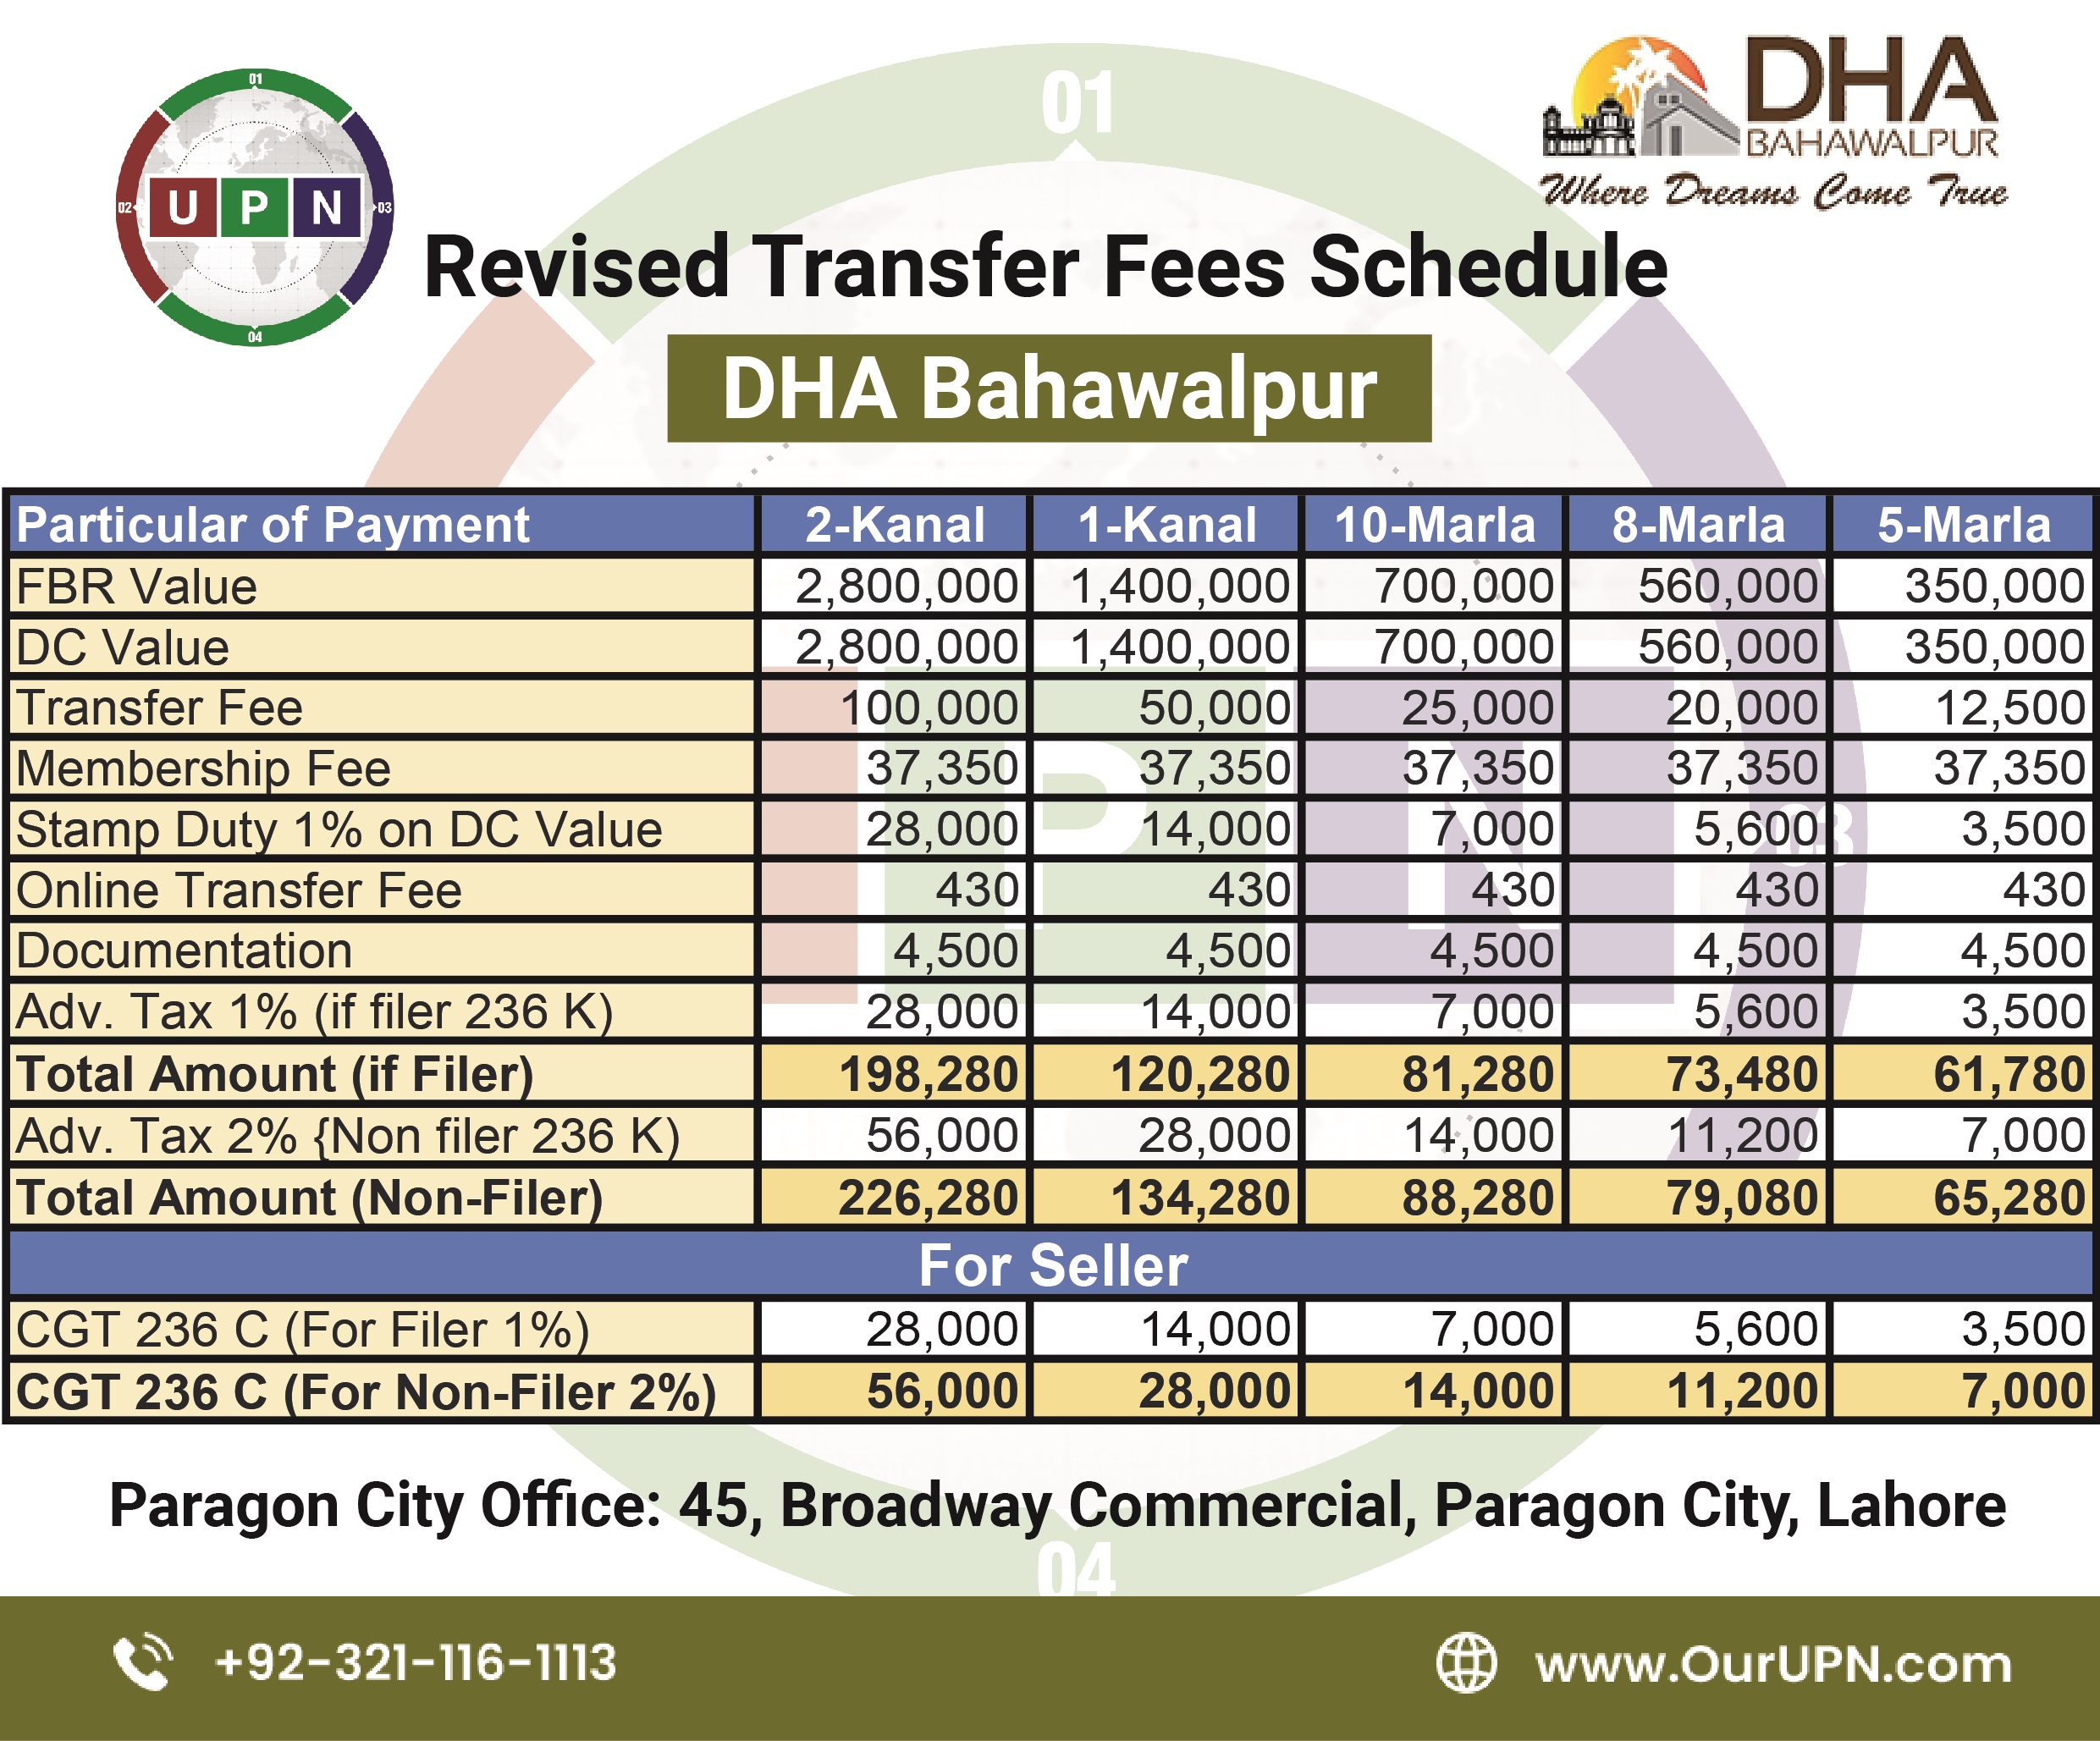 DHA BAHAWALPUR Transfer Fees Schedule 2021-2022